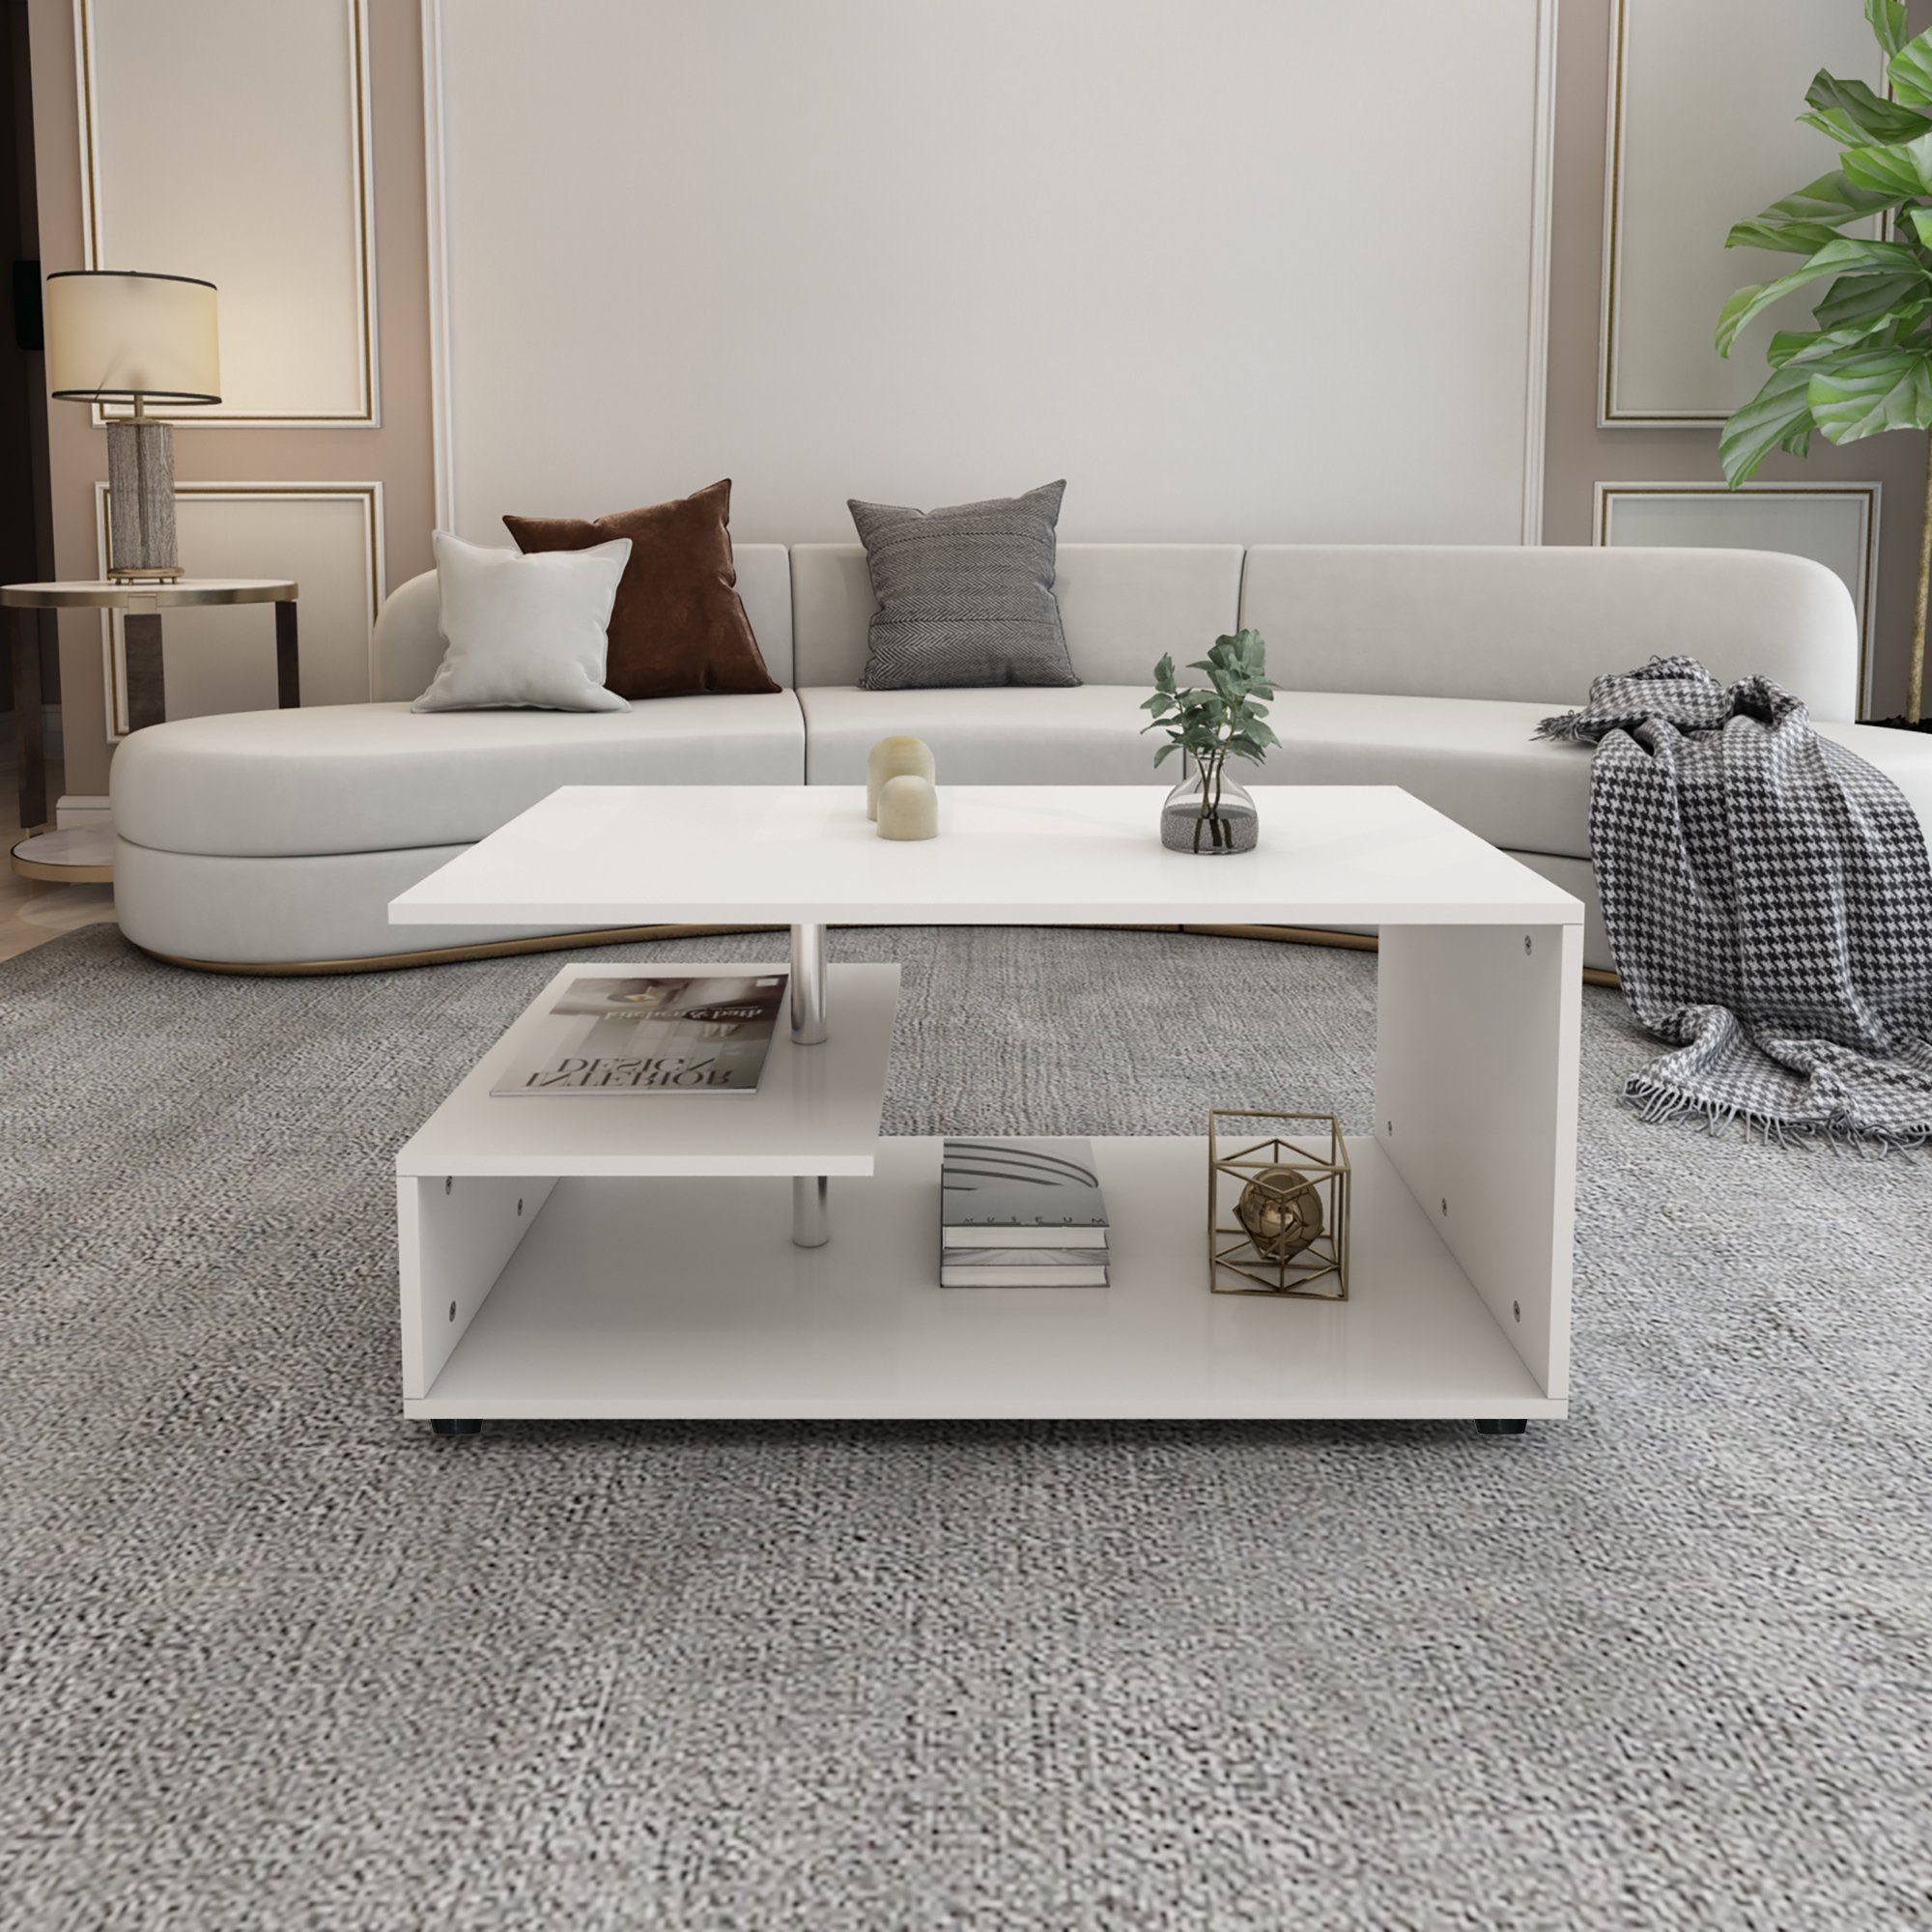 ML-DESIGN Couchtisch Wohnzimmertisch Beistelltisch Wohnzimmermöbel Kaffeetisch Holztisch, Weiß Metall Dekostange 91x41x52,6cm Modern Geräumig mit Ablageflächen